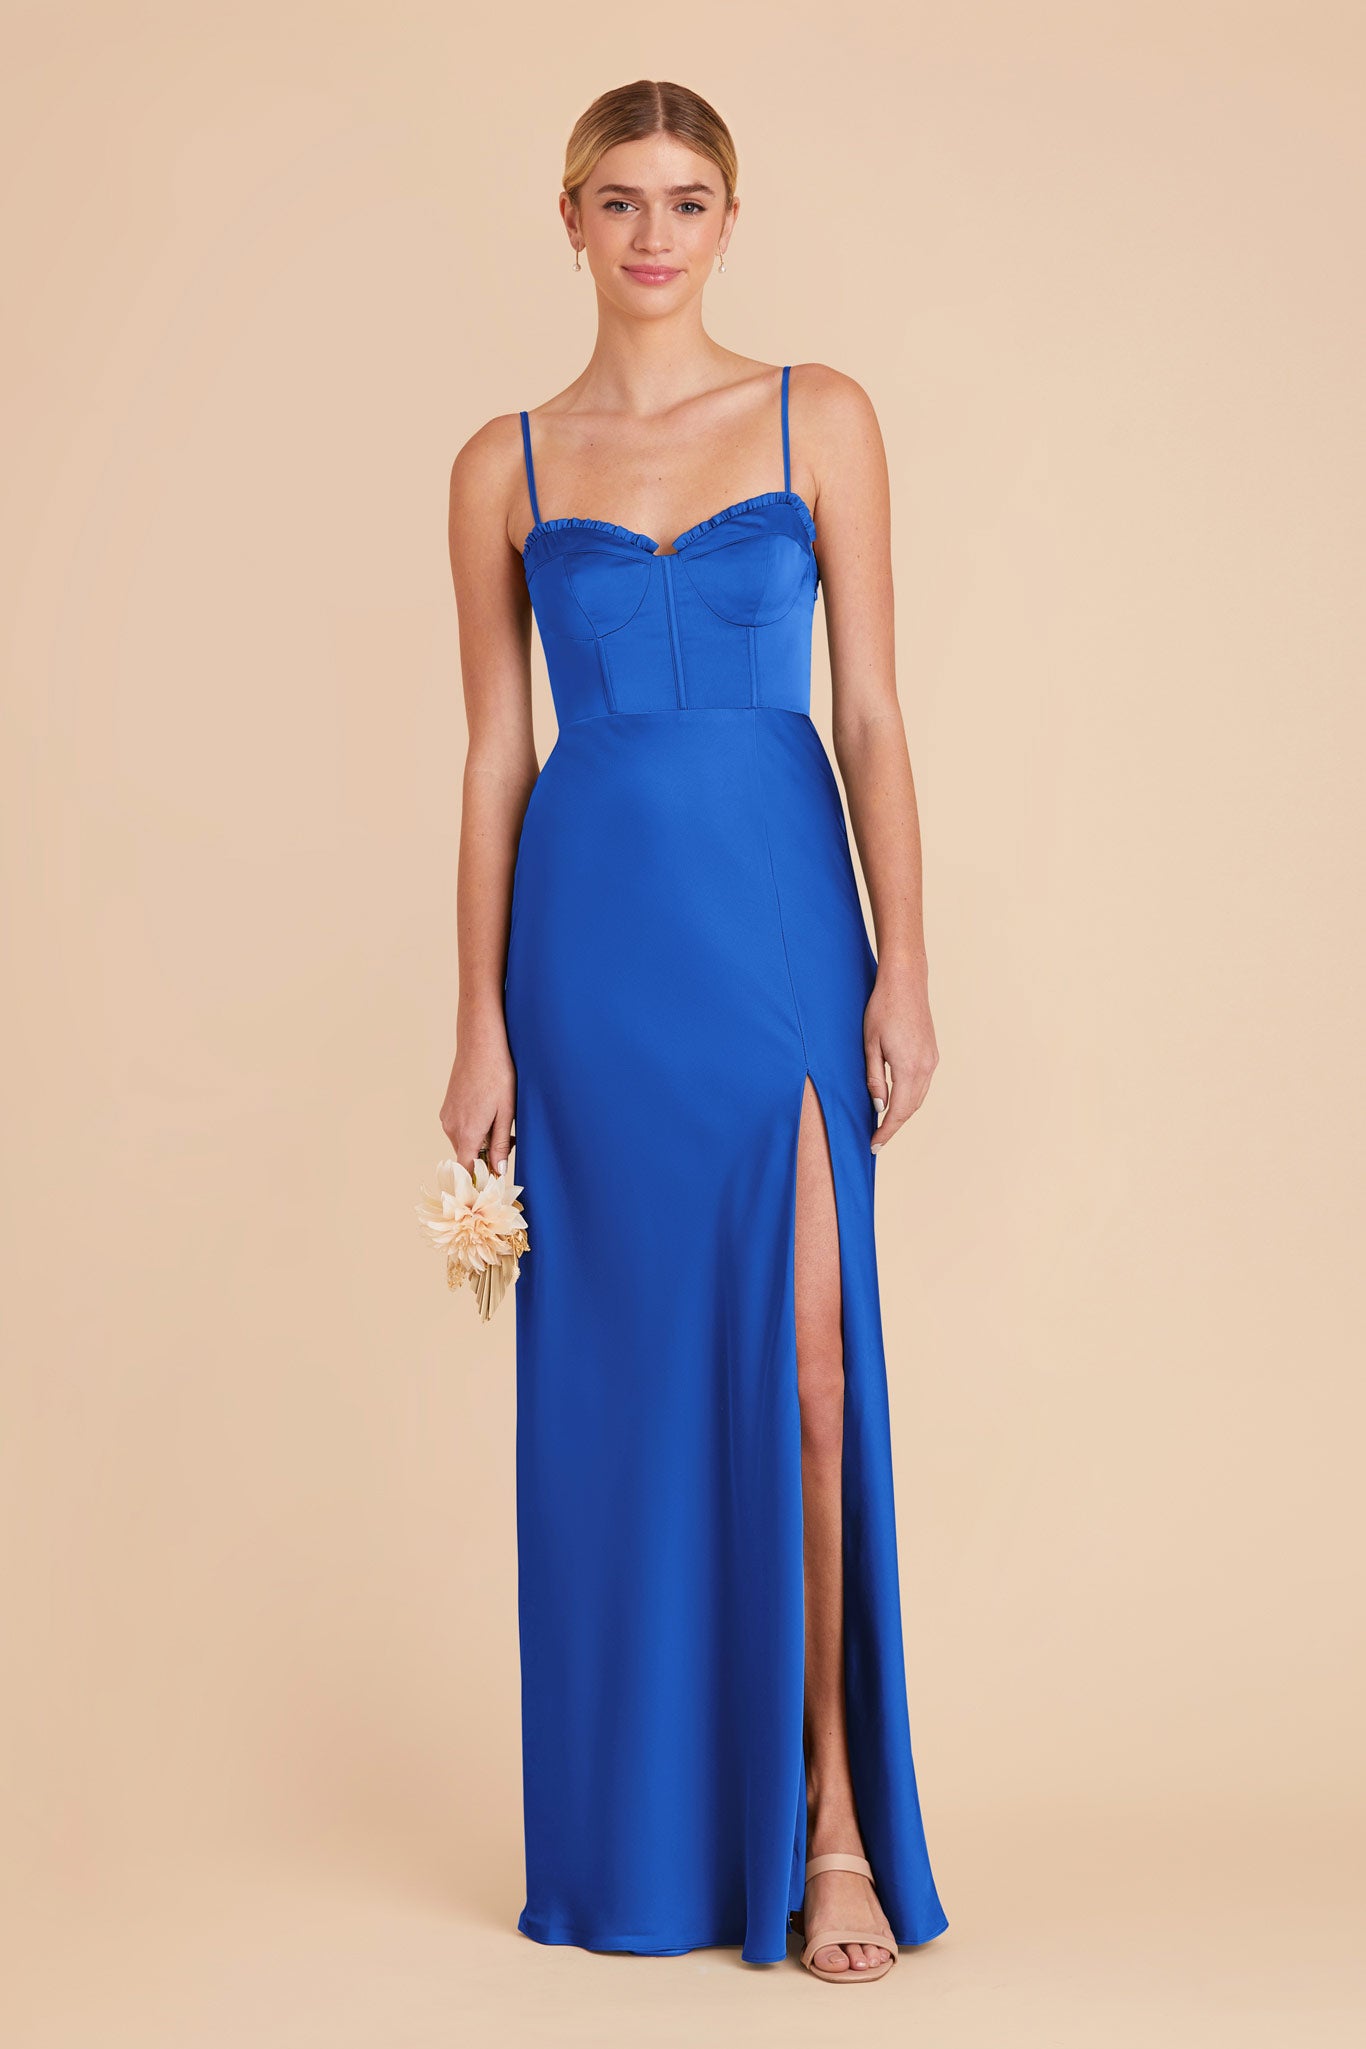 Cobalt Blue Jessica Matte Satin Dress by Birdy Grey